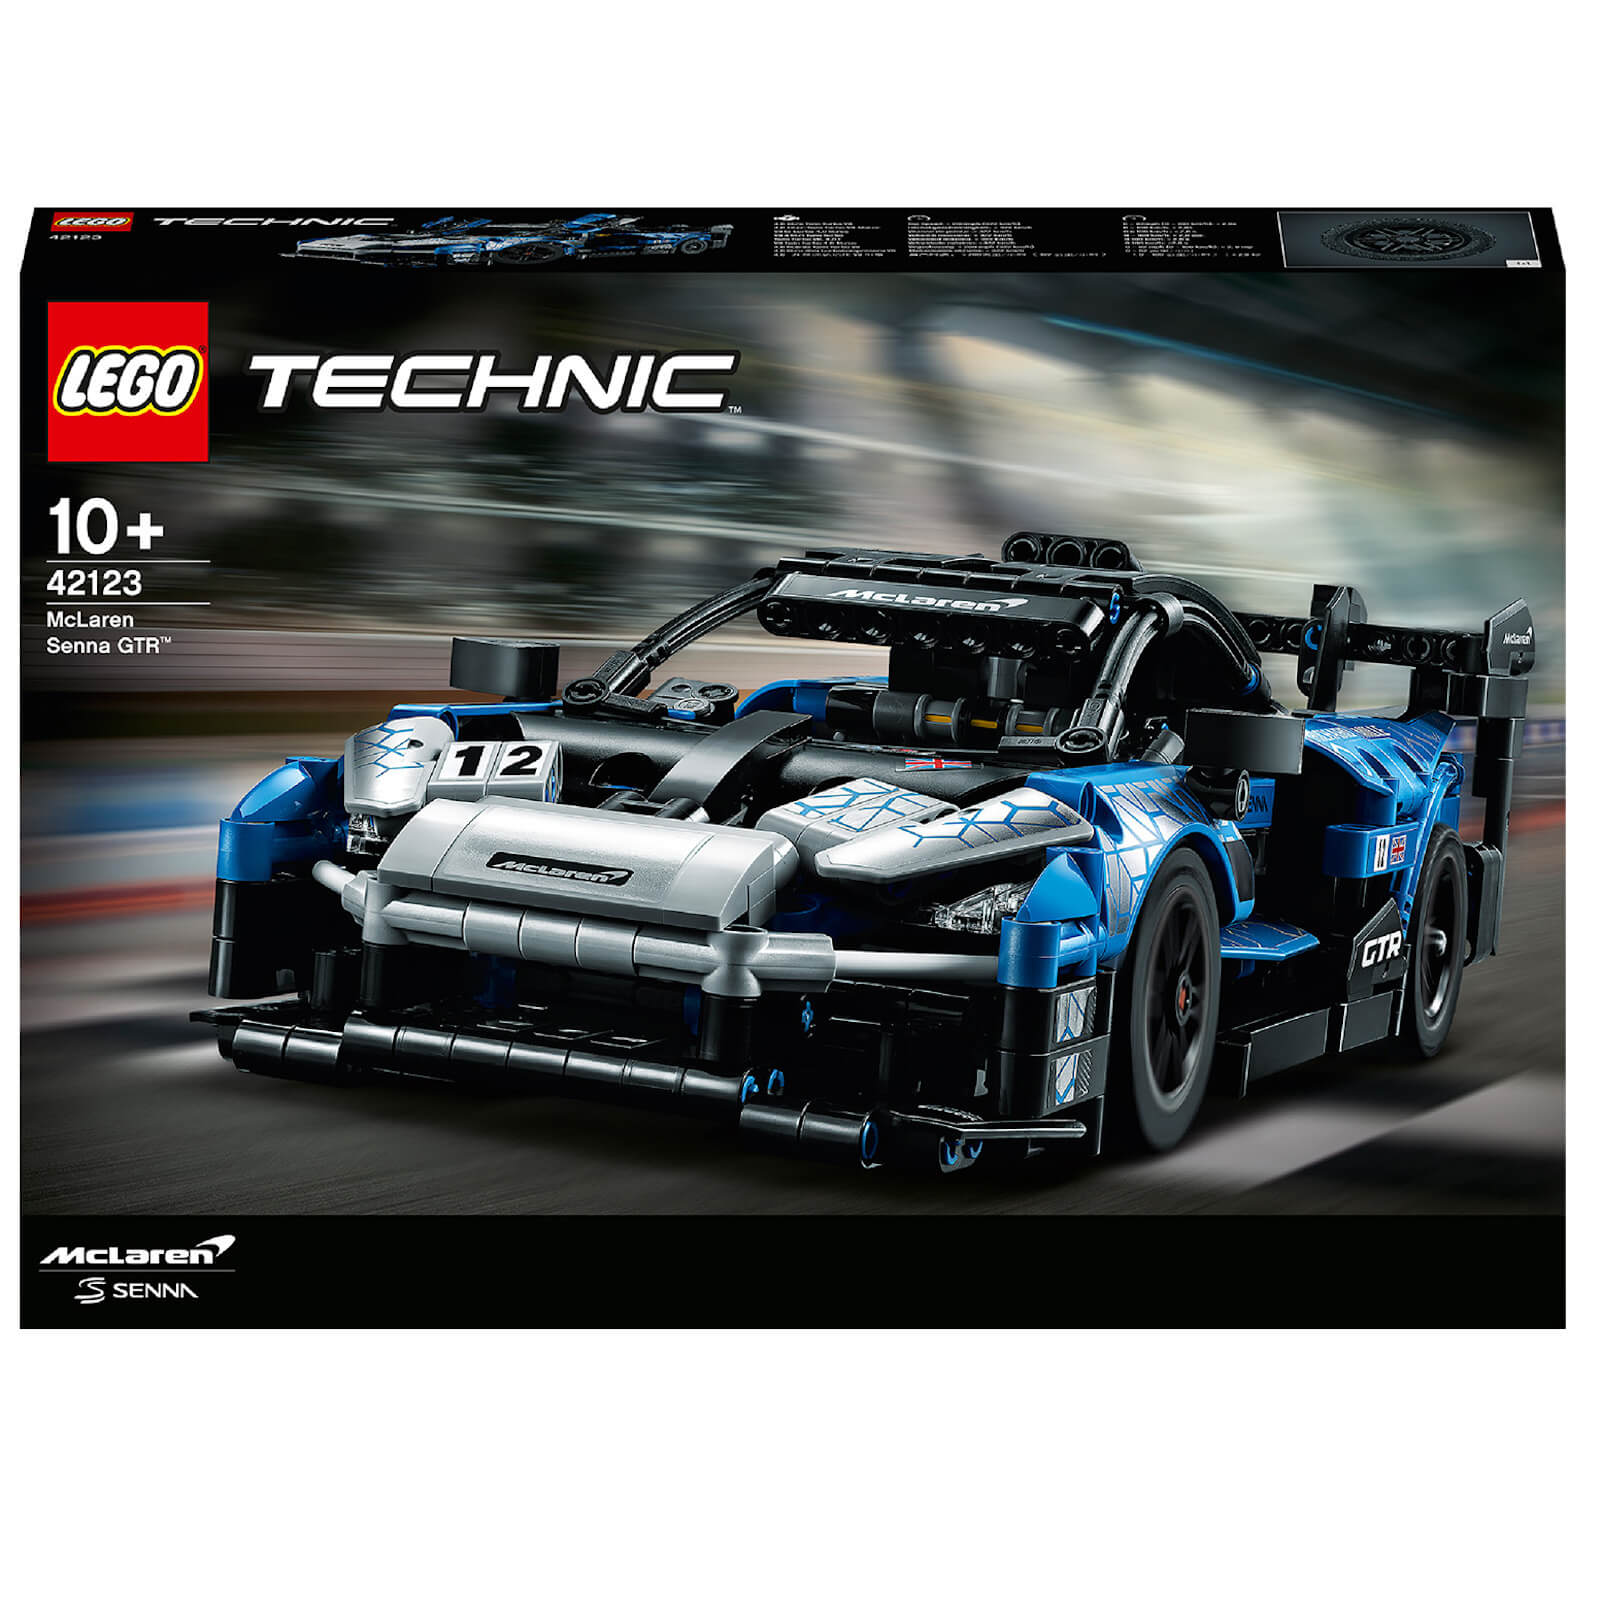 Lego Technic: McLaren Senna GTR Toy Car (42123)